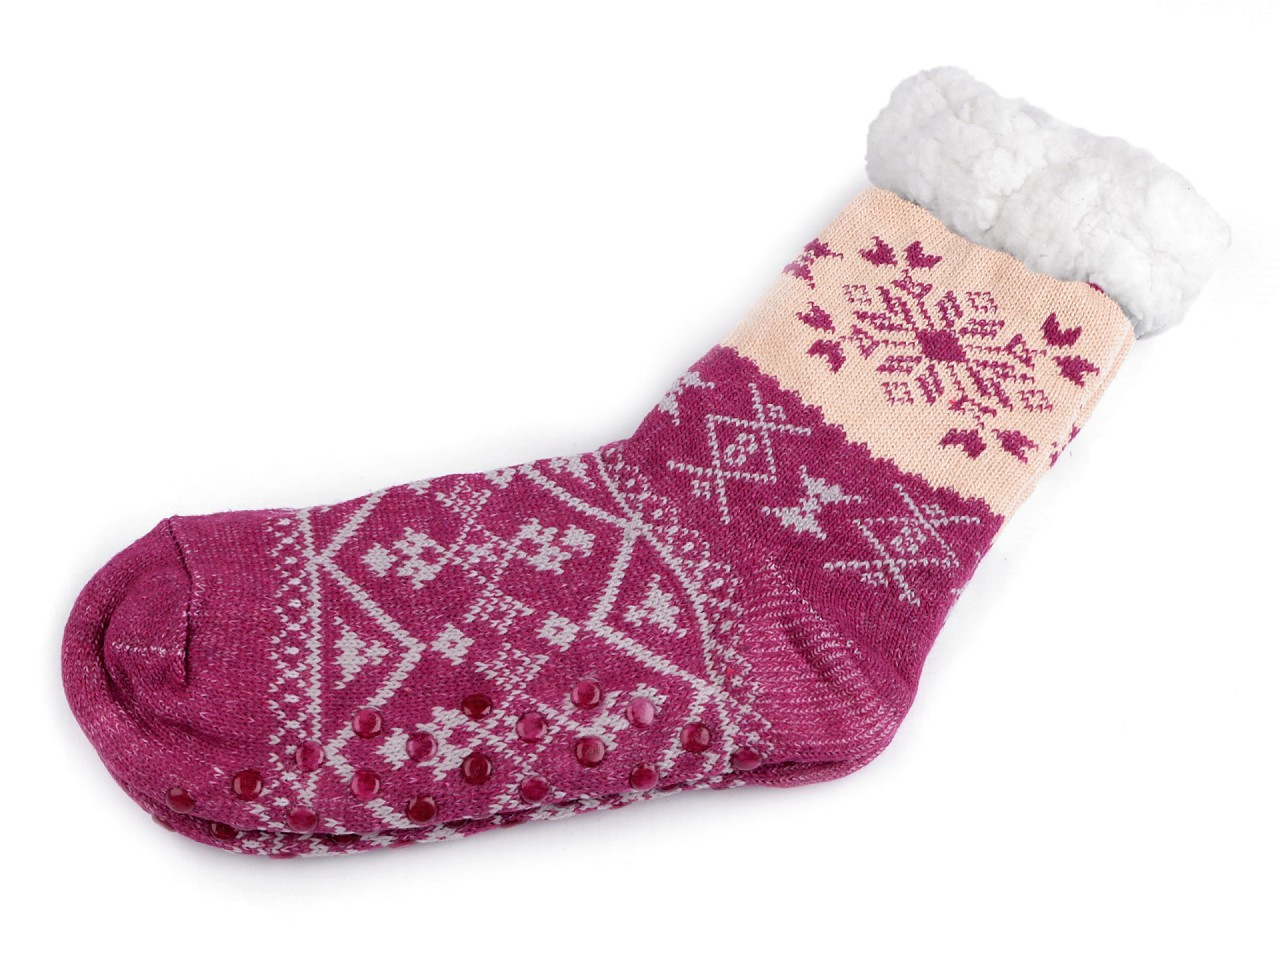 Ponožky zimní s kožíškem a protiskluzem, unisex, barva 14 (vel. 35-38) fialovorůžová